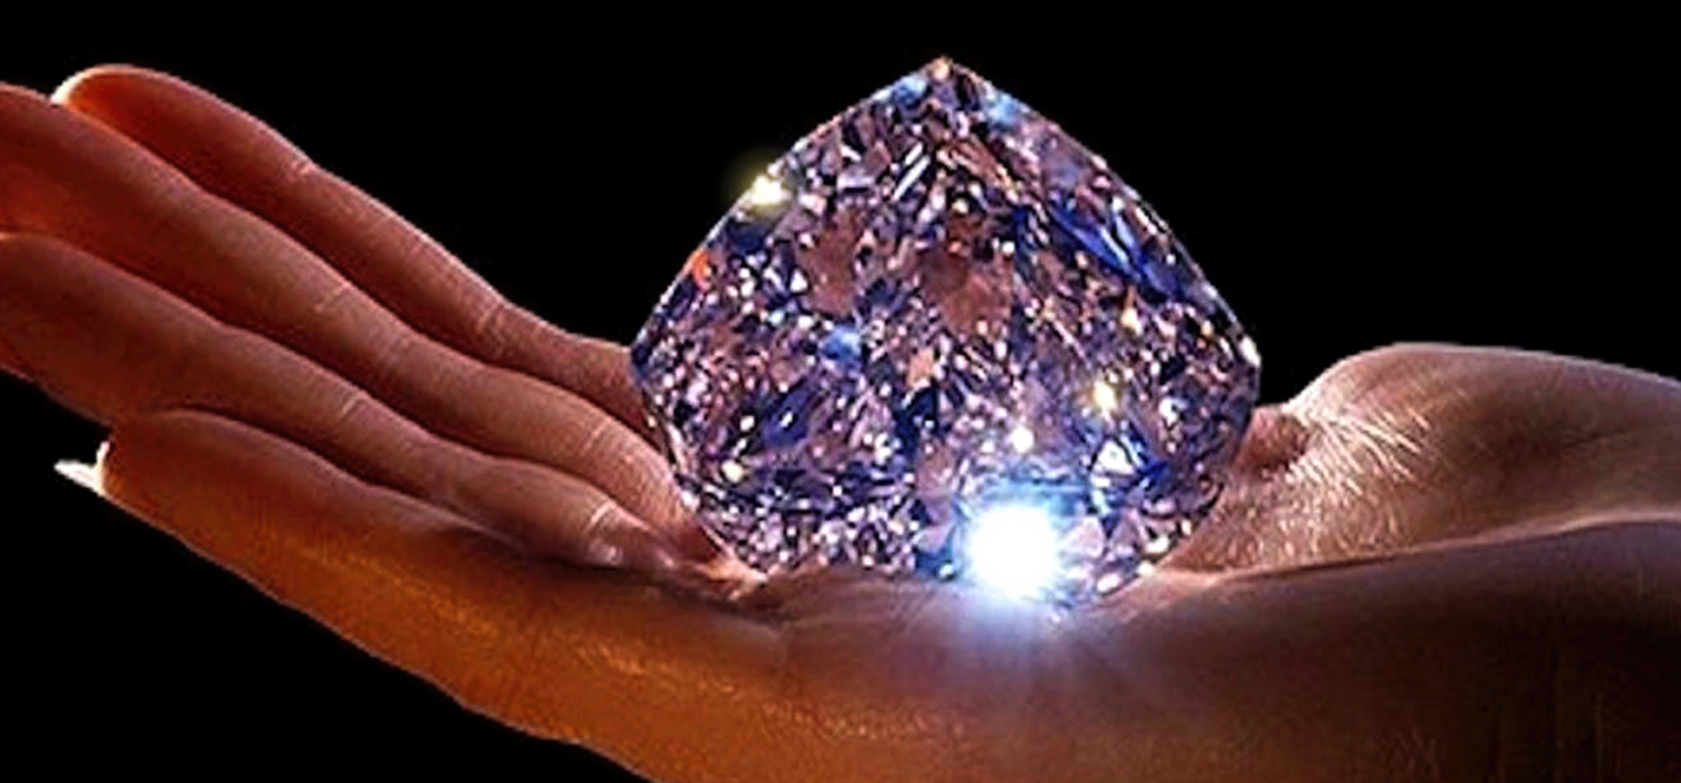 Инвестирование в драгоценности first class diamonds. Алмаз de Beers Centenary. Драгоценный камень в руках.